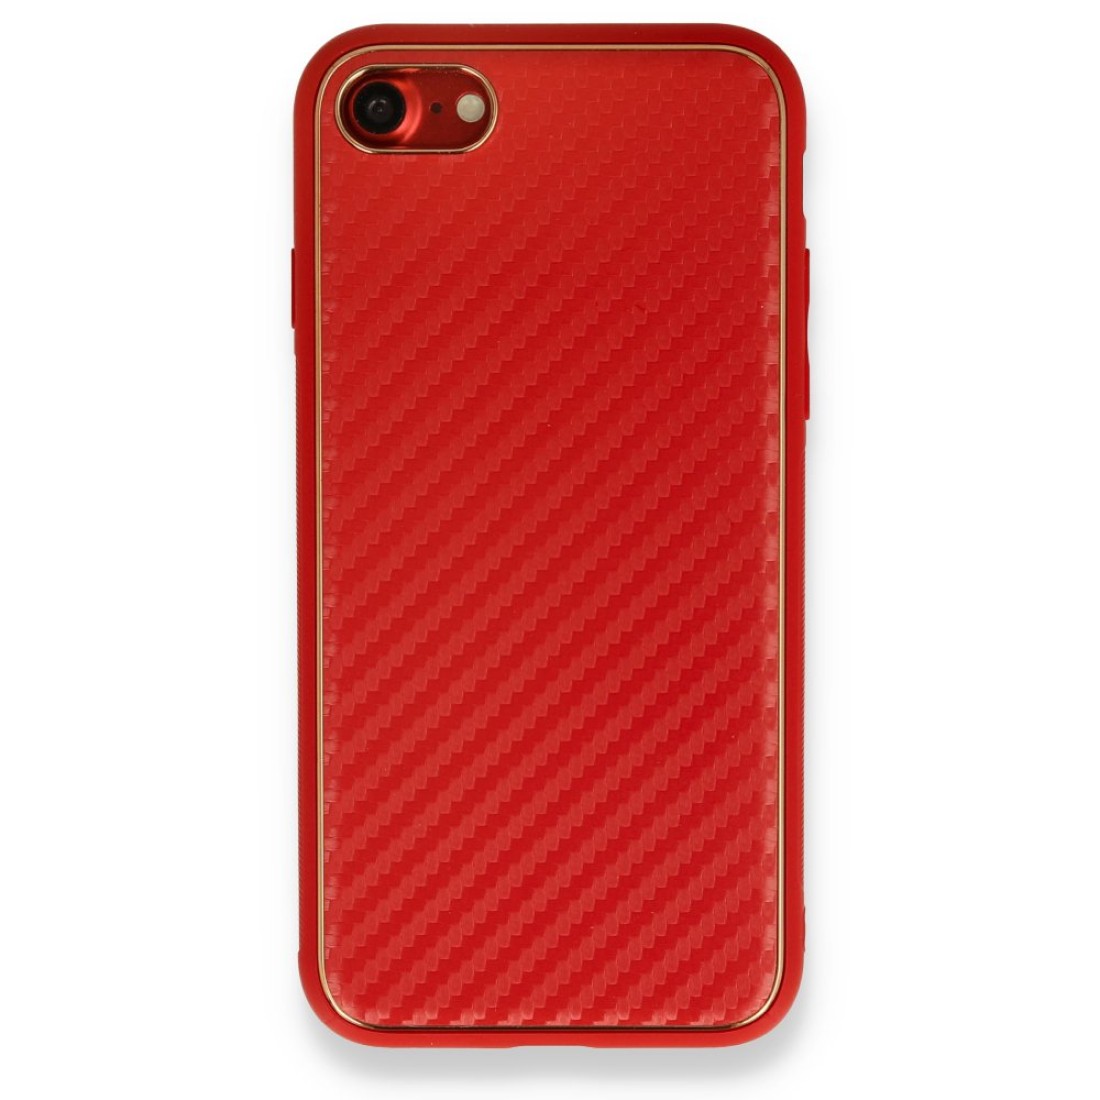 Apple iPhone SE 2020 Kılıf Coco Karbon Silikon - Kırmızı